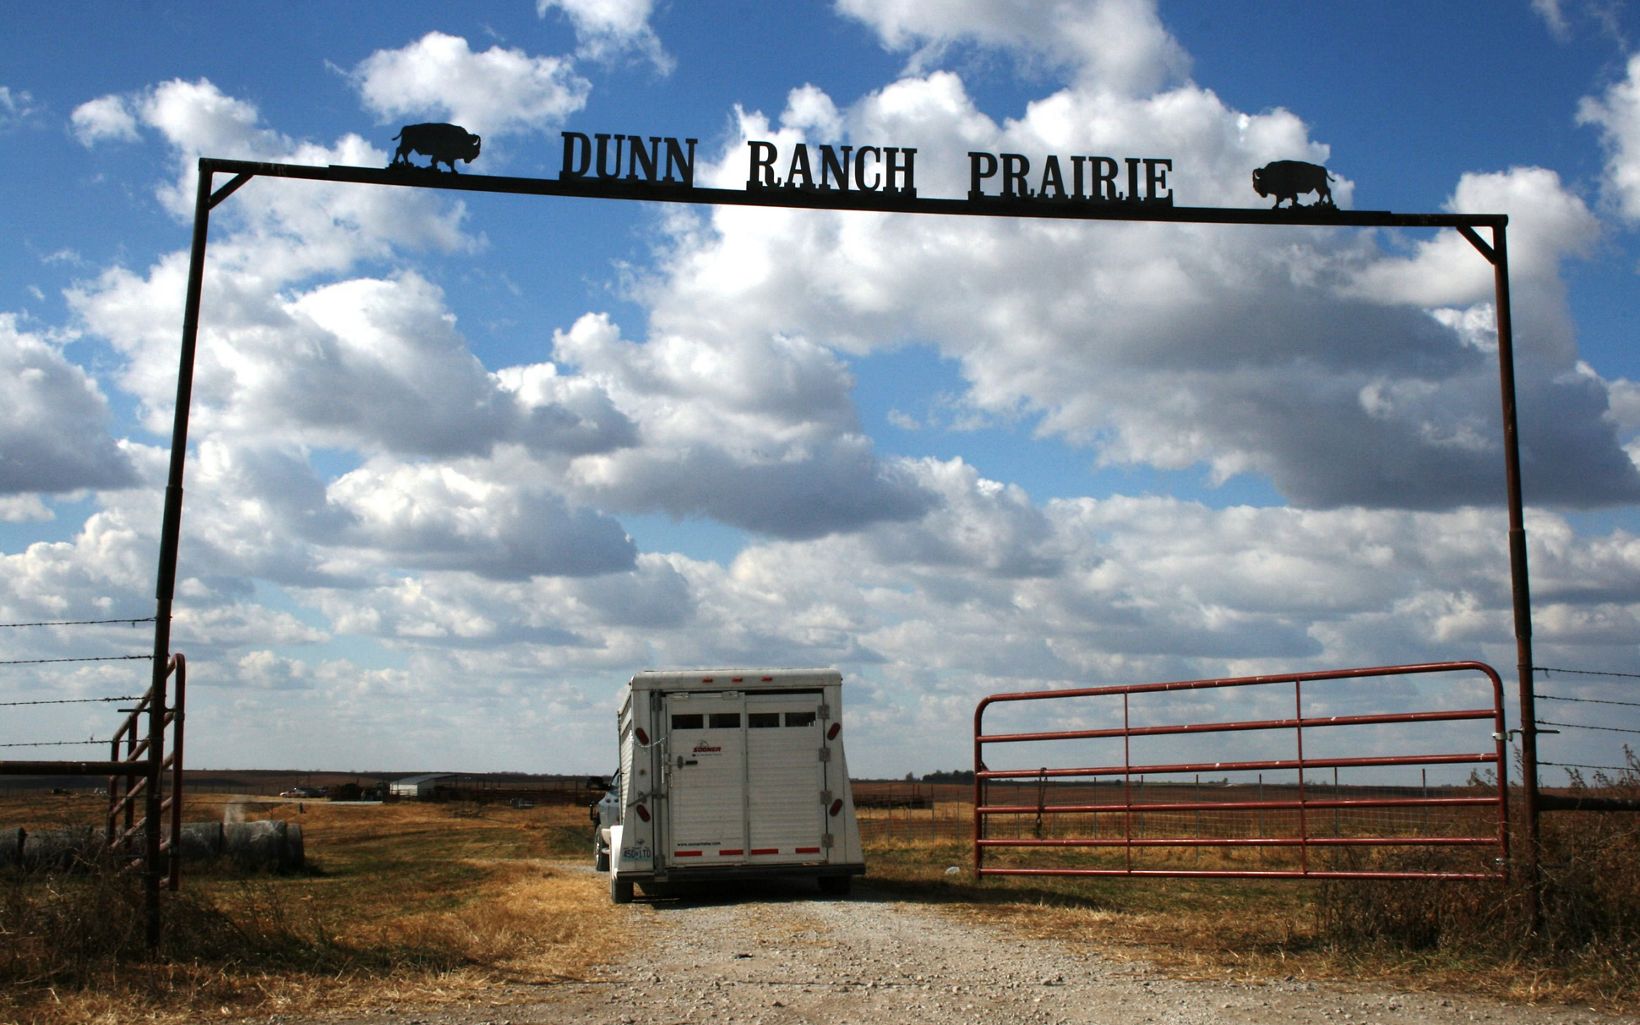 A trailer is pulled through the gates of Dunn Ranch Prairie.